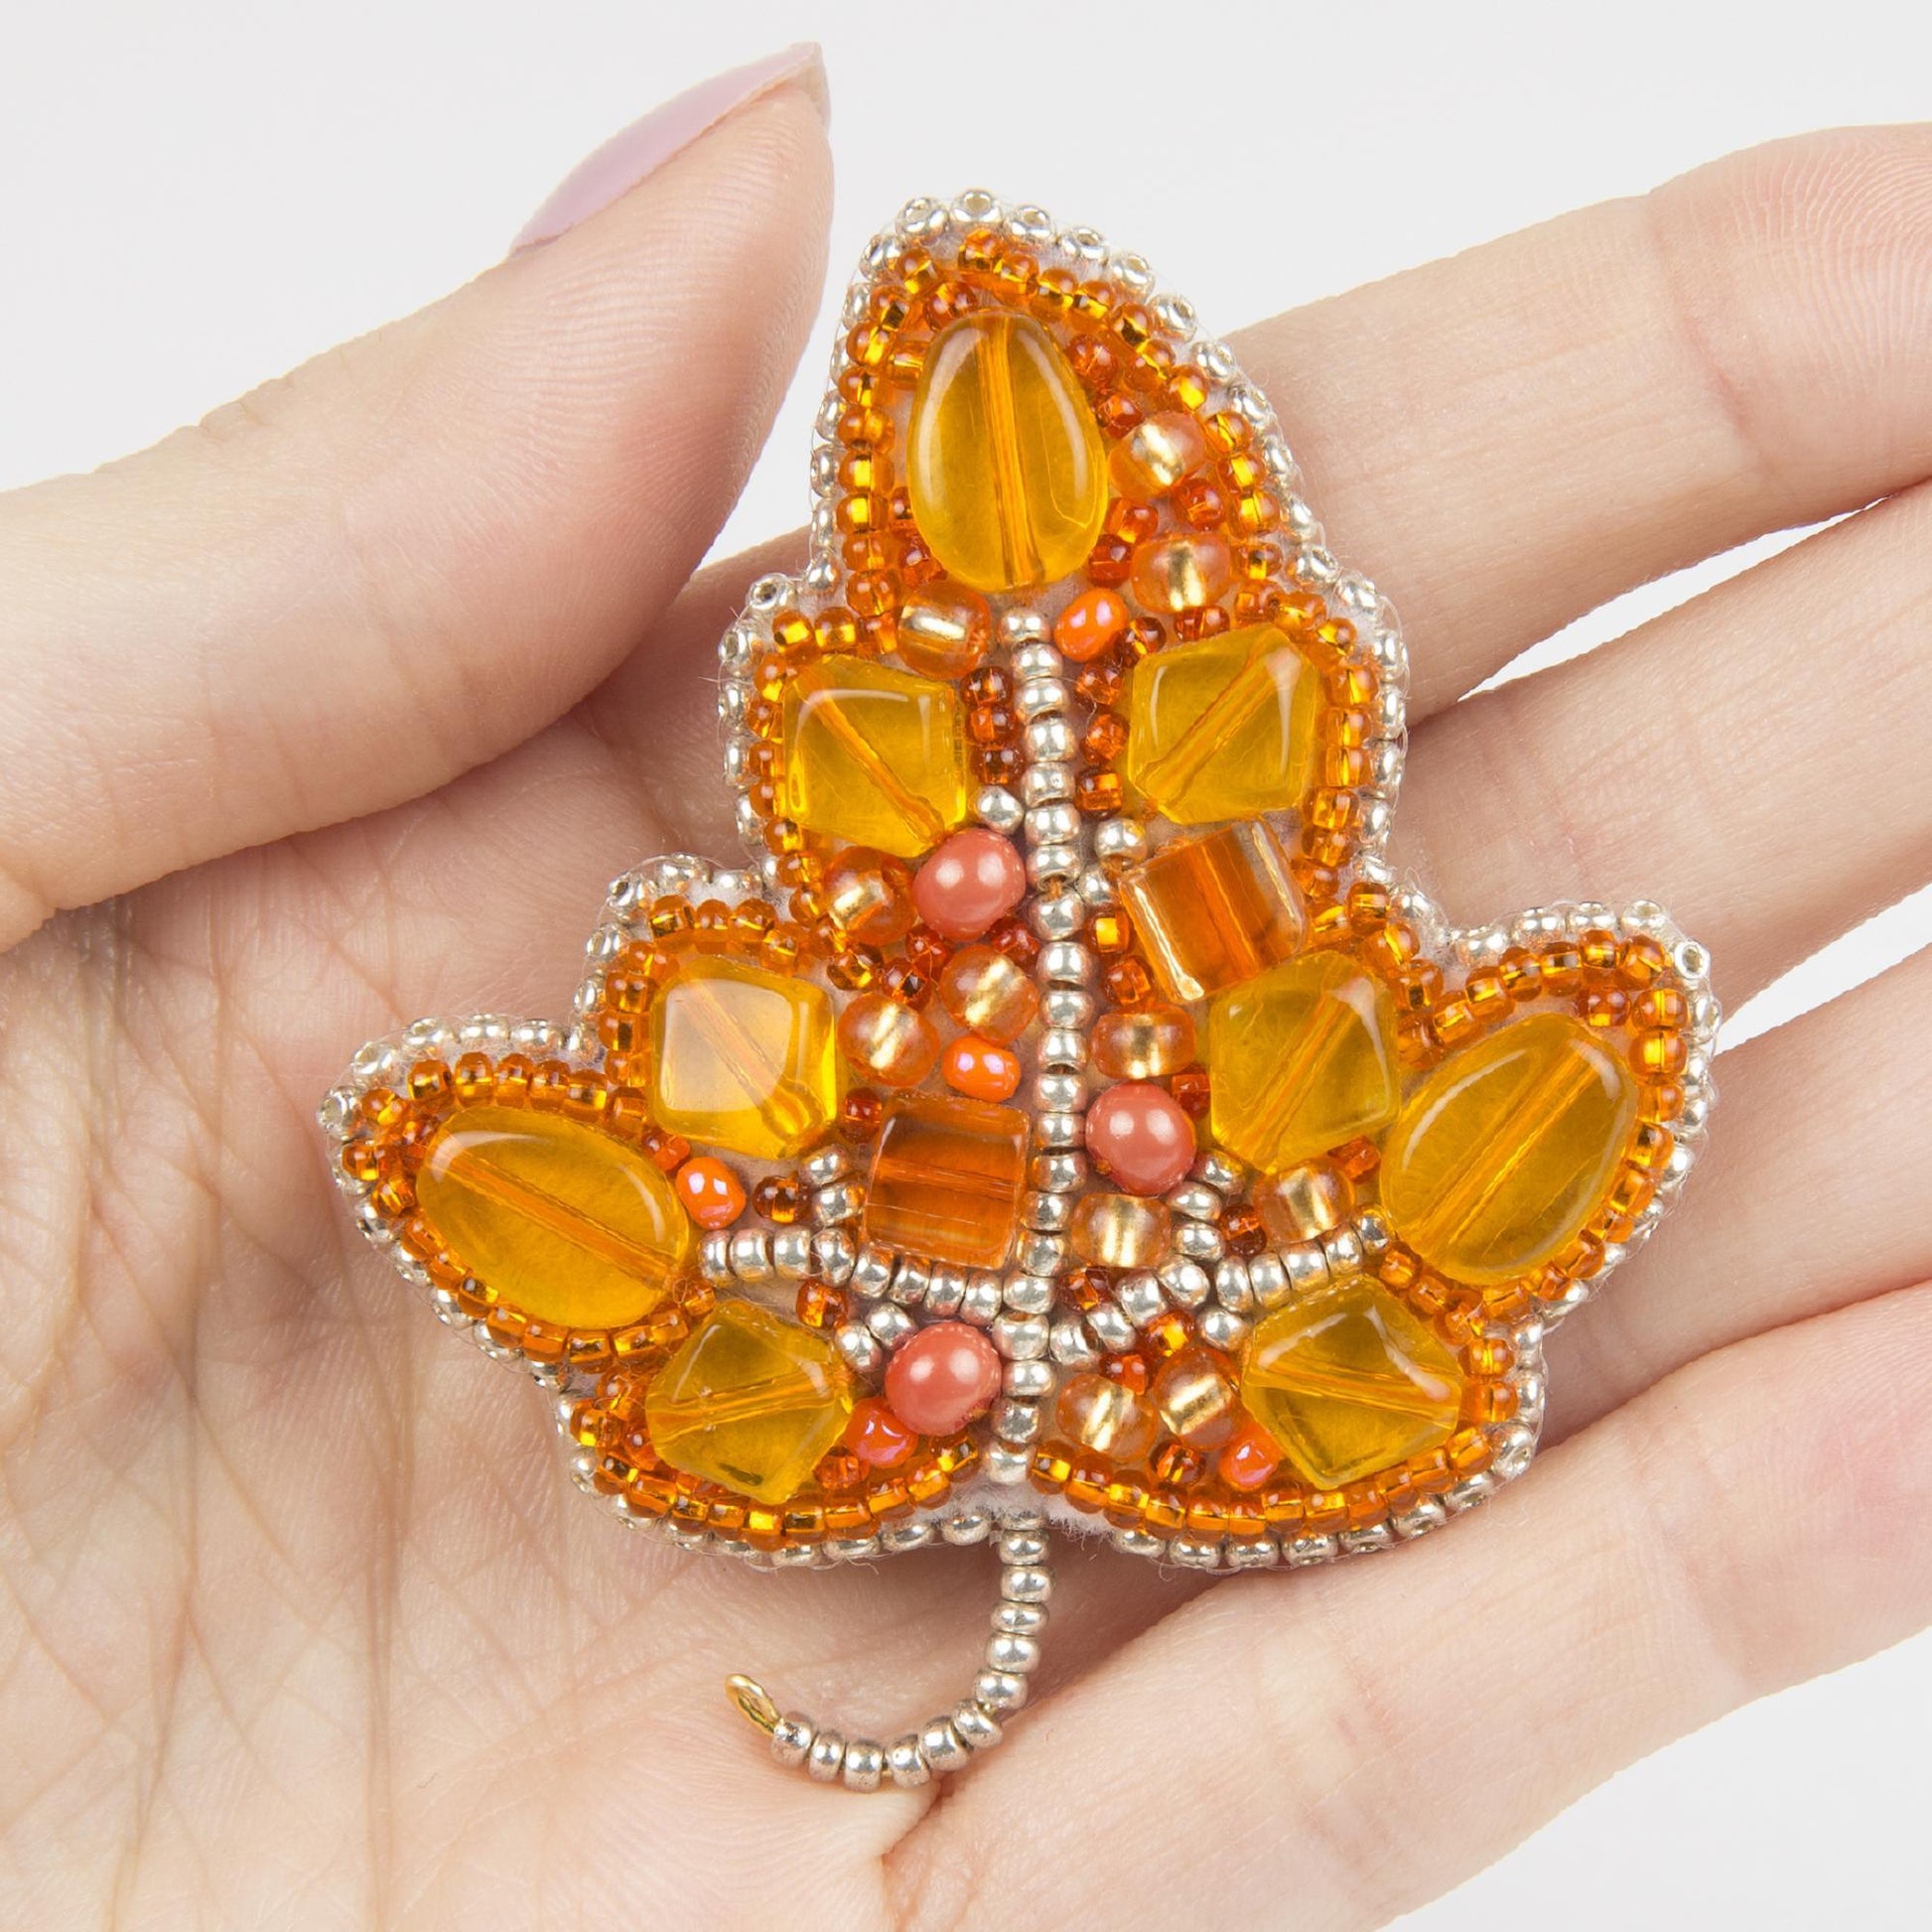 BP-271 Beadwork kit for creating broоch Crystal Art "Autumn Leaf" - Leo Hobby